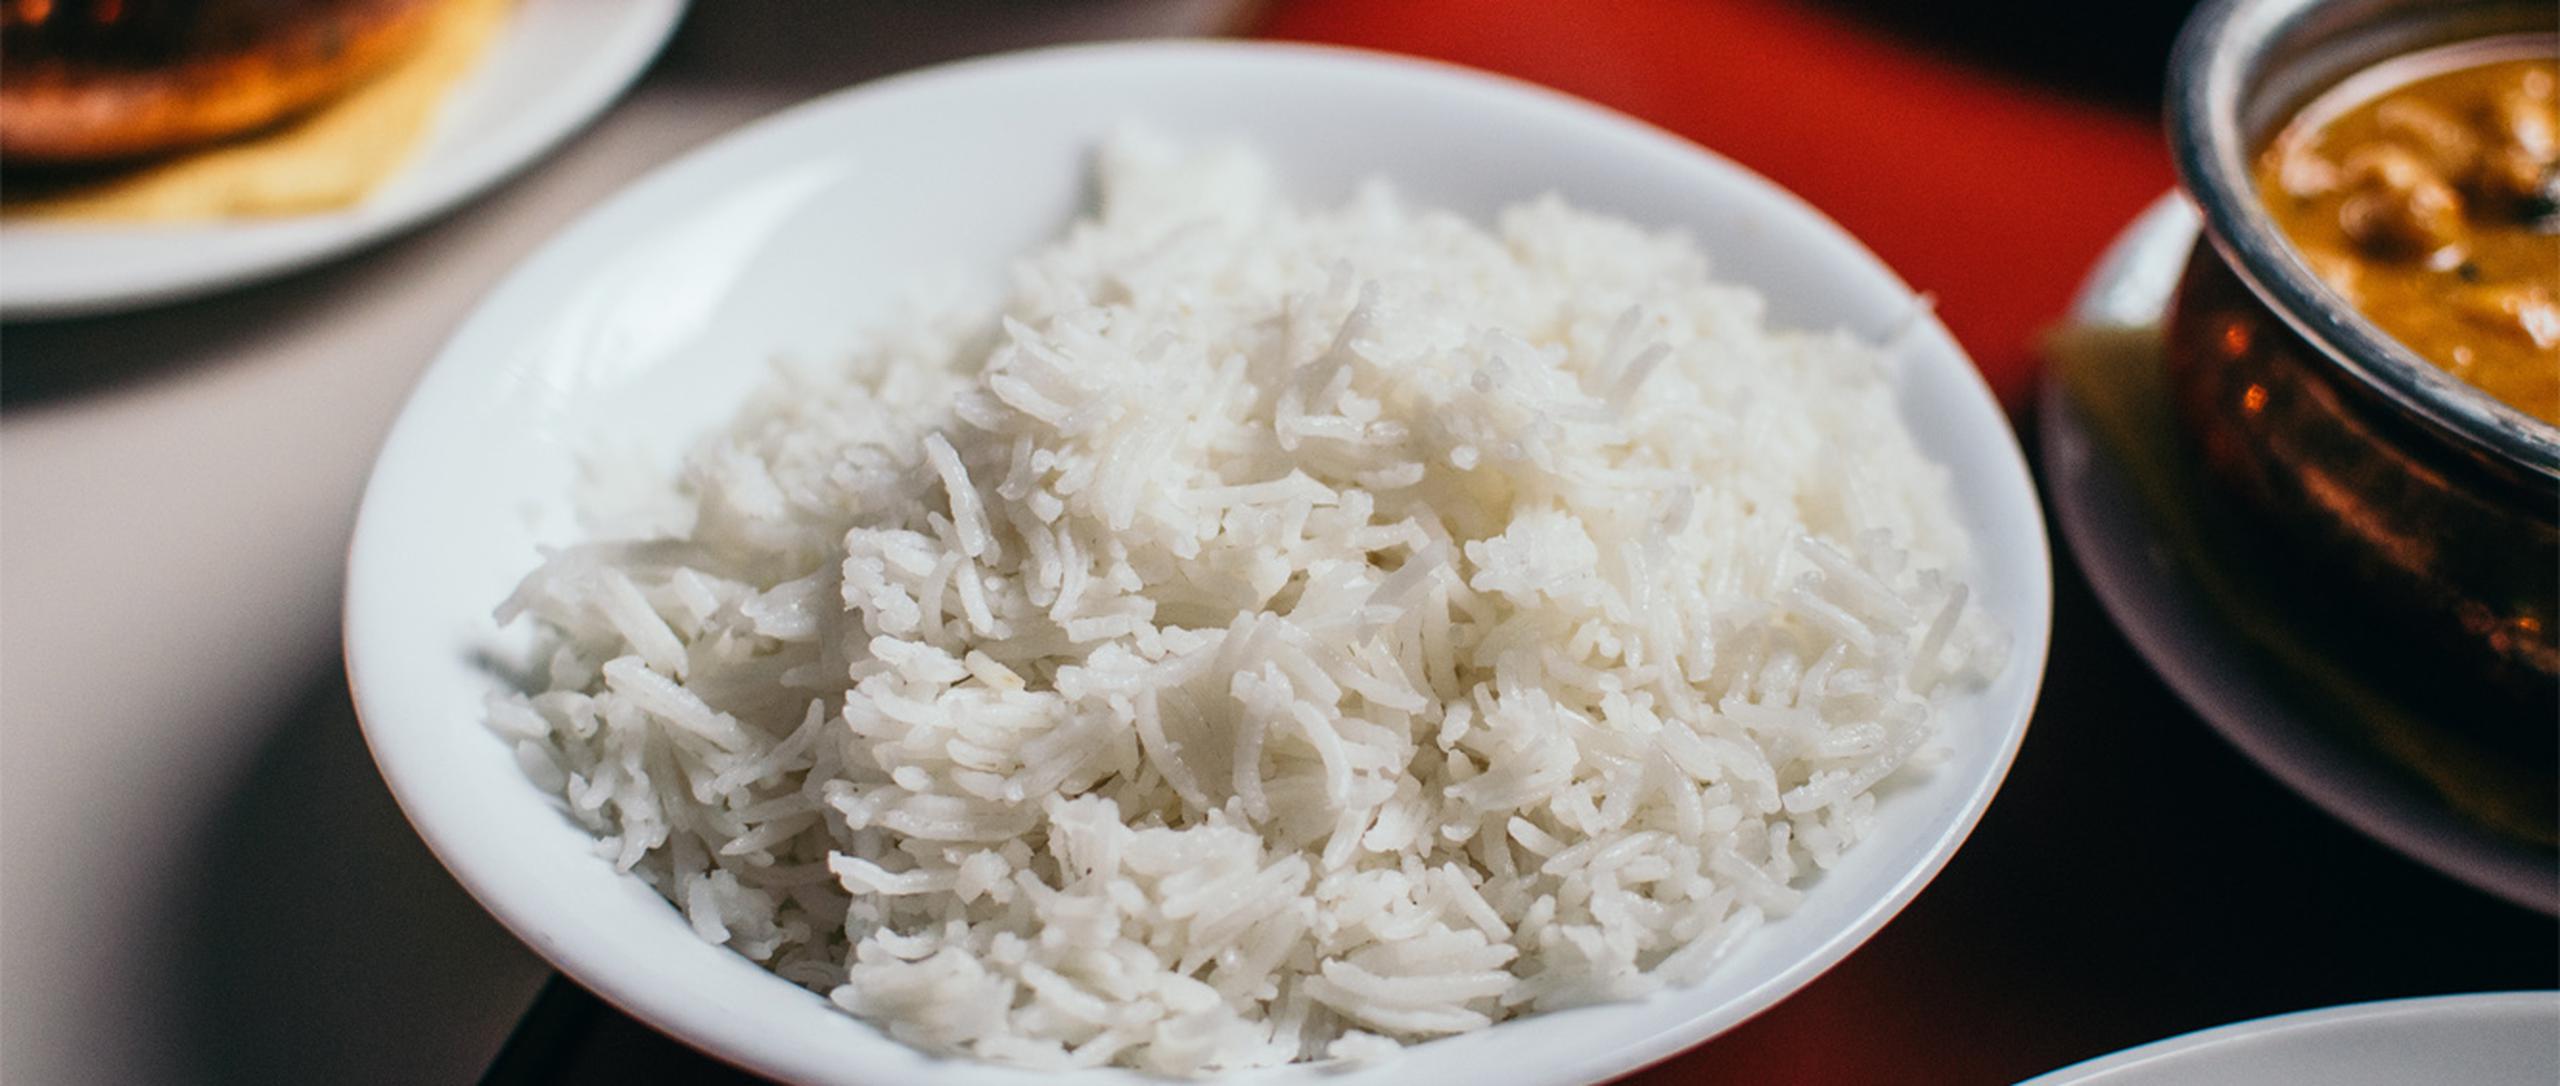 Consumir 50 gramos de arroz integral en lugar de blanco reduciría el riesgo de diabetes en un 16%. (Pille-Riin Priske / Unsplash)